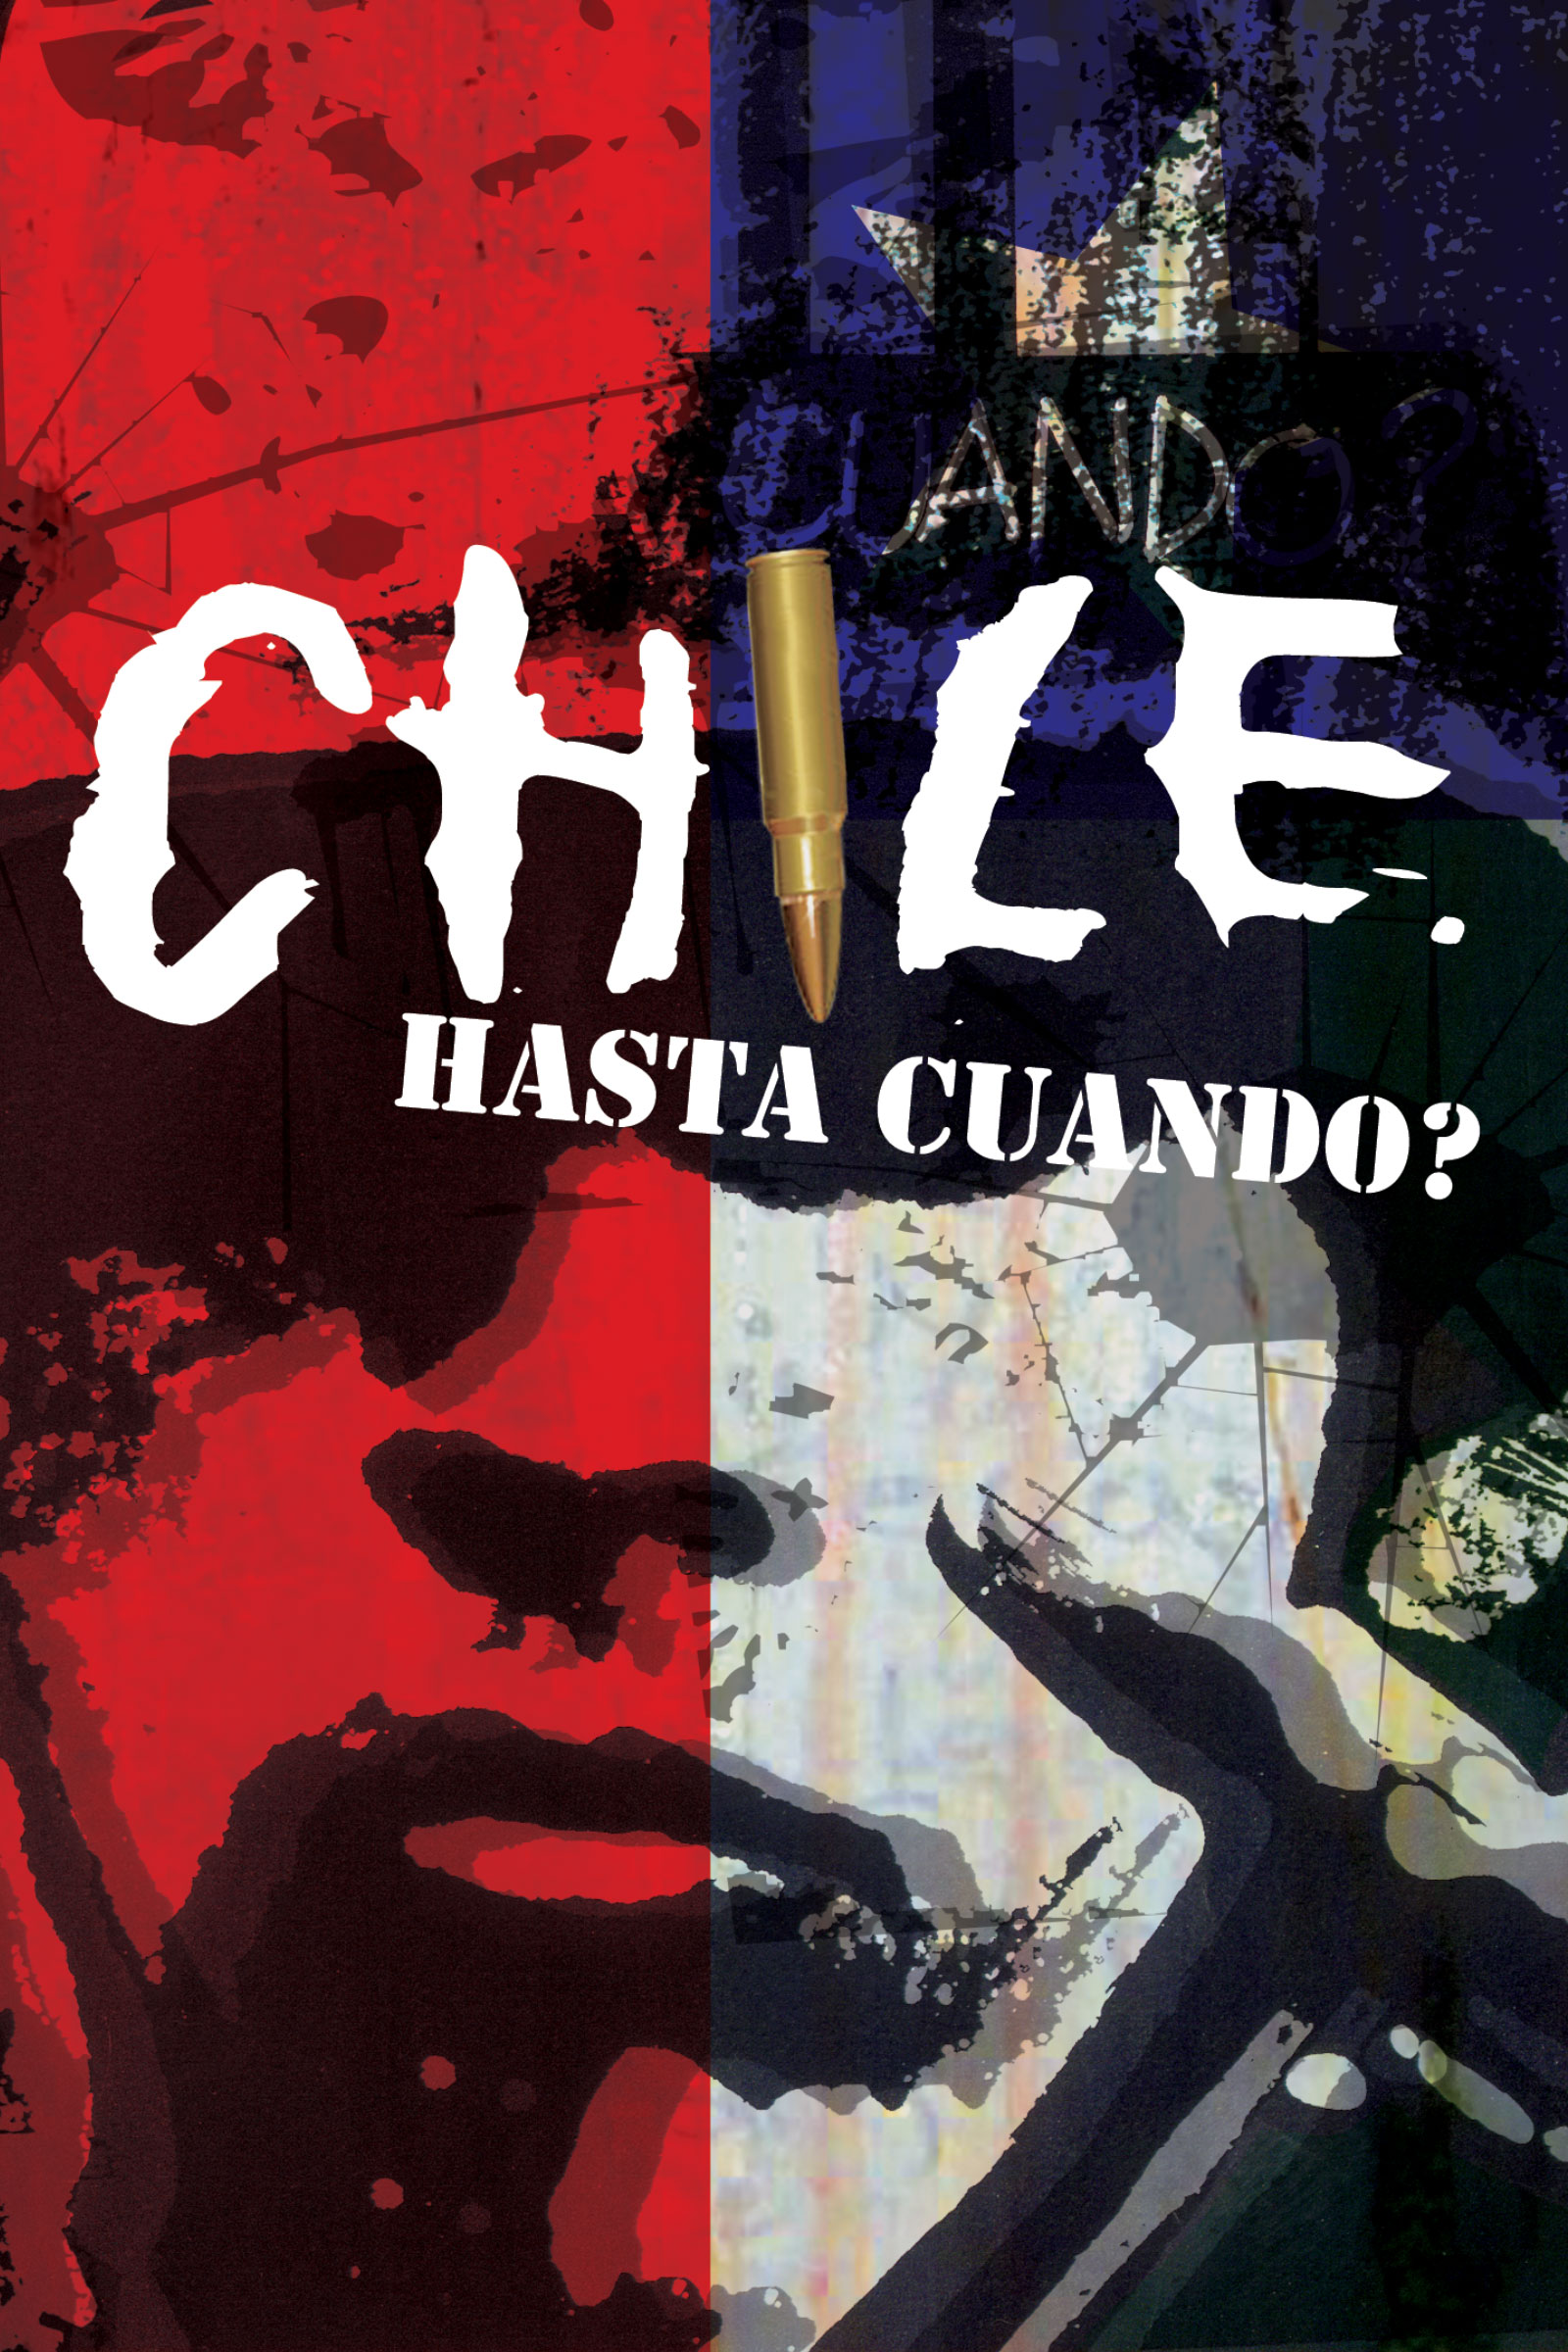 Where to stream Chile Hasta Cuando?